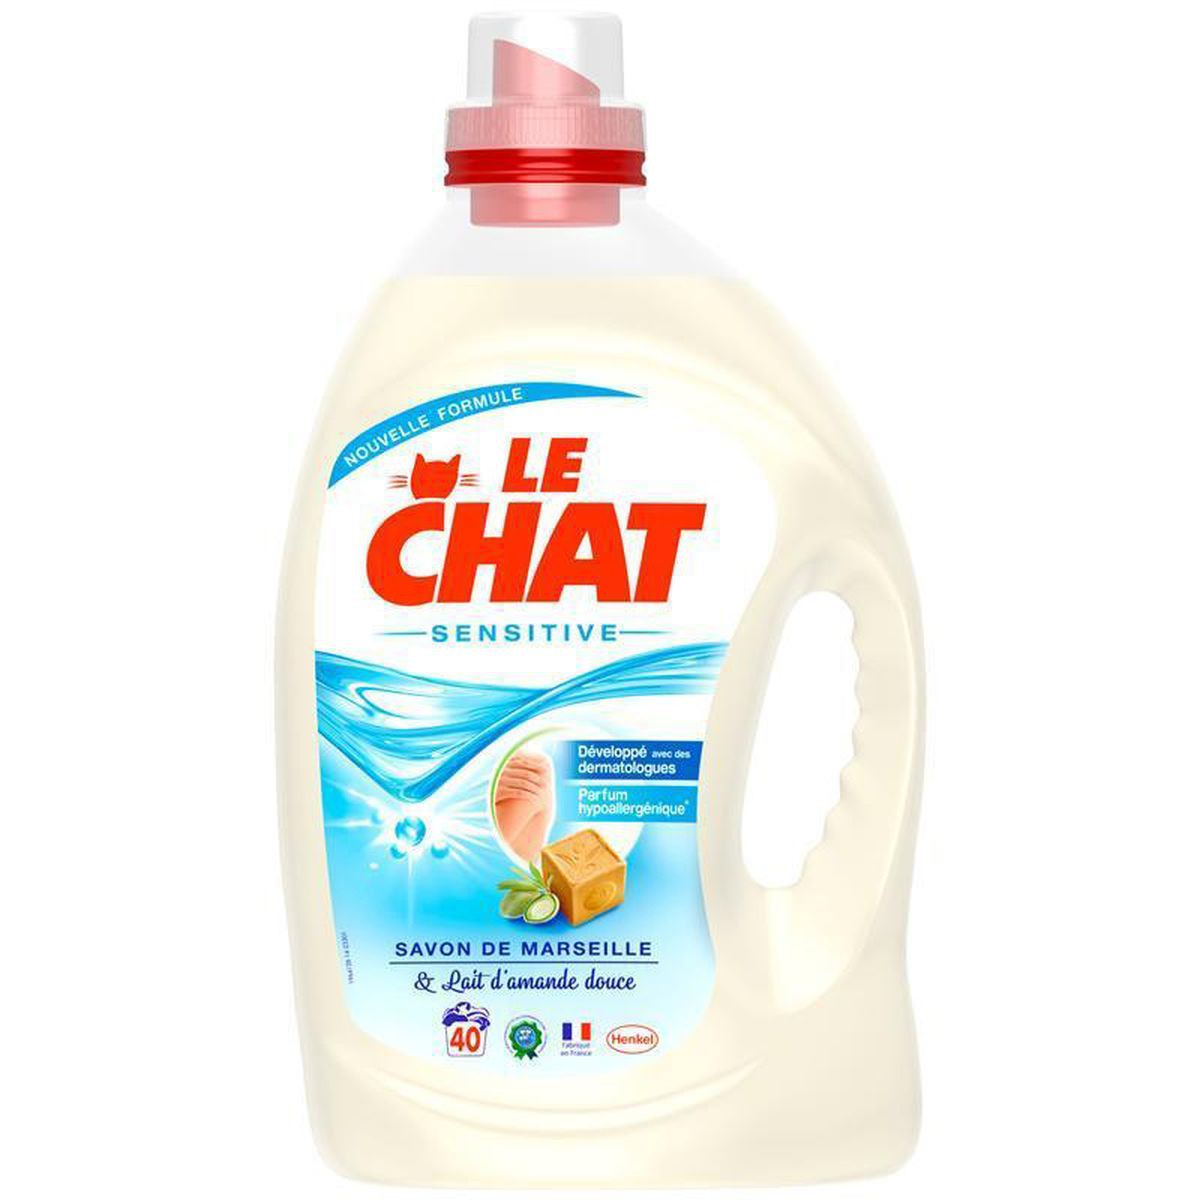 Flacon 3L Lessive Liquide Sensitive Le Chat - DRH MARKET Sarl